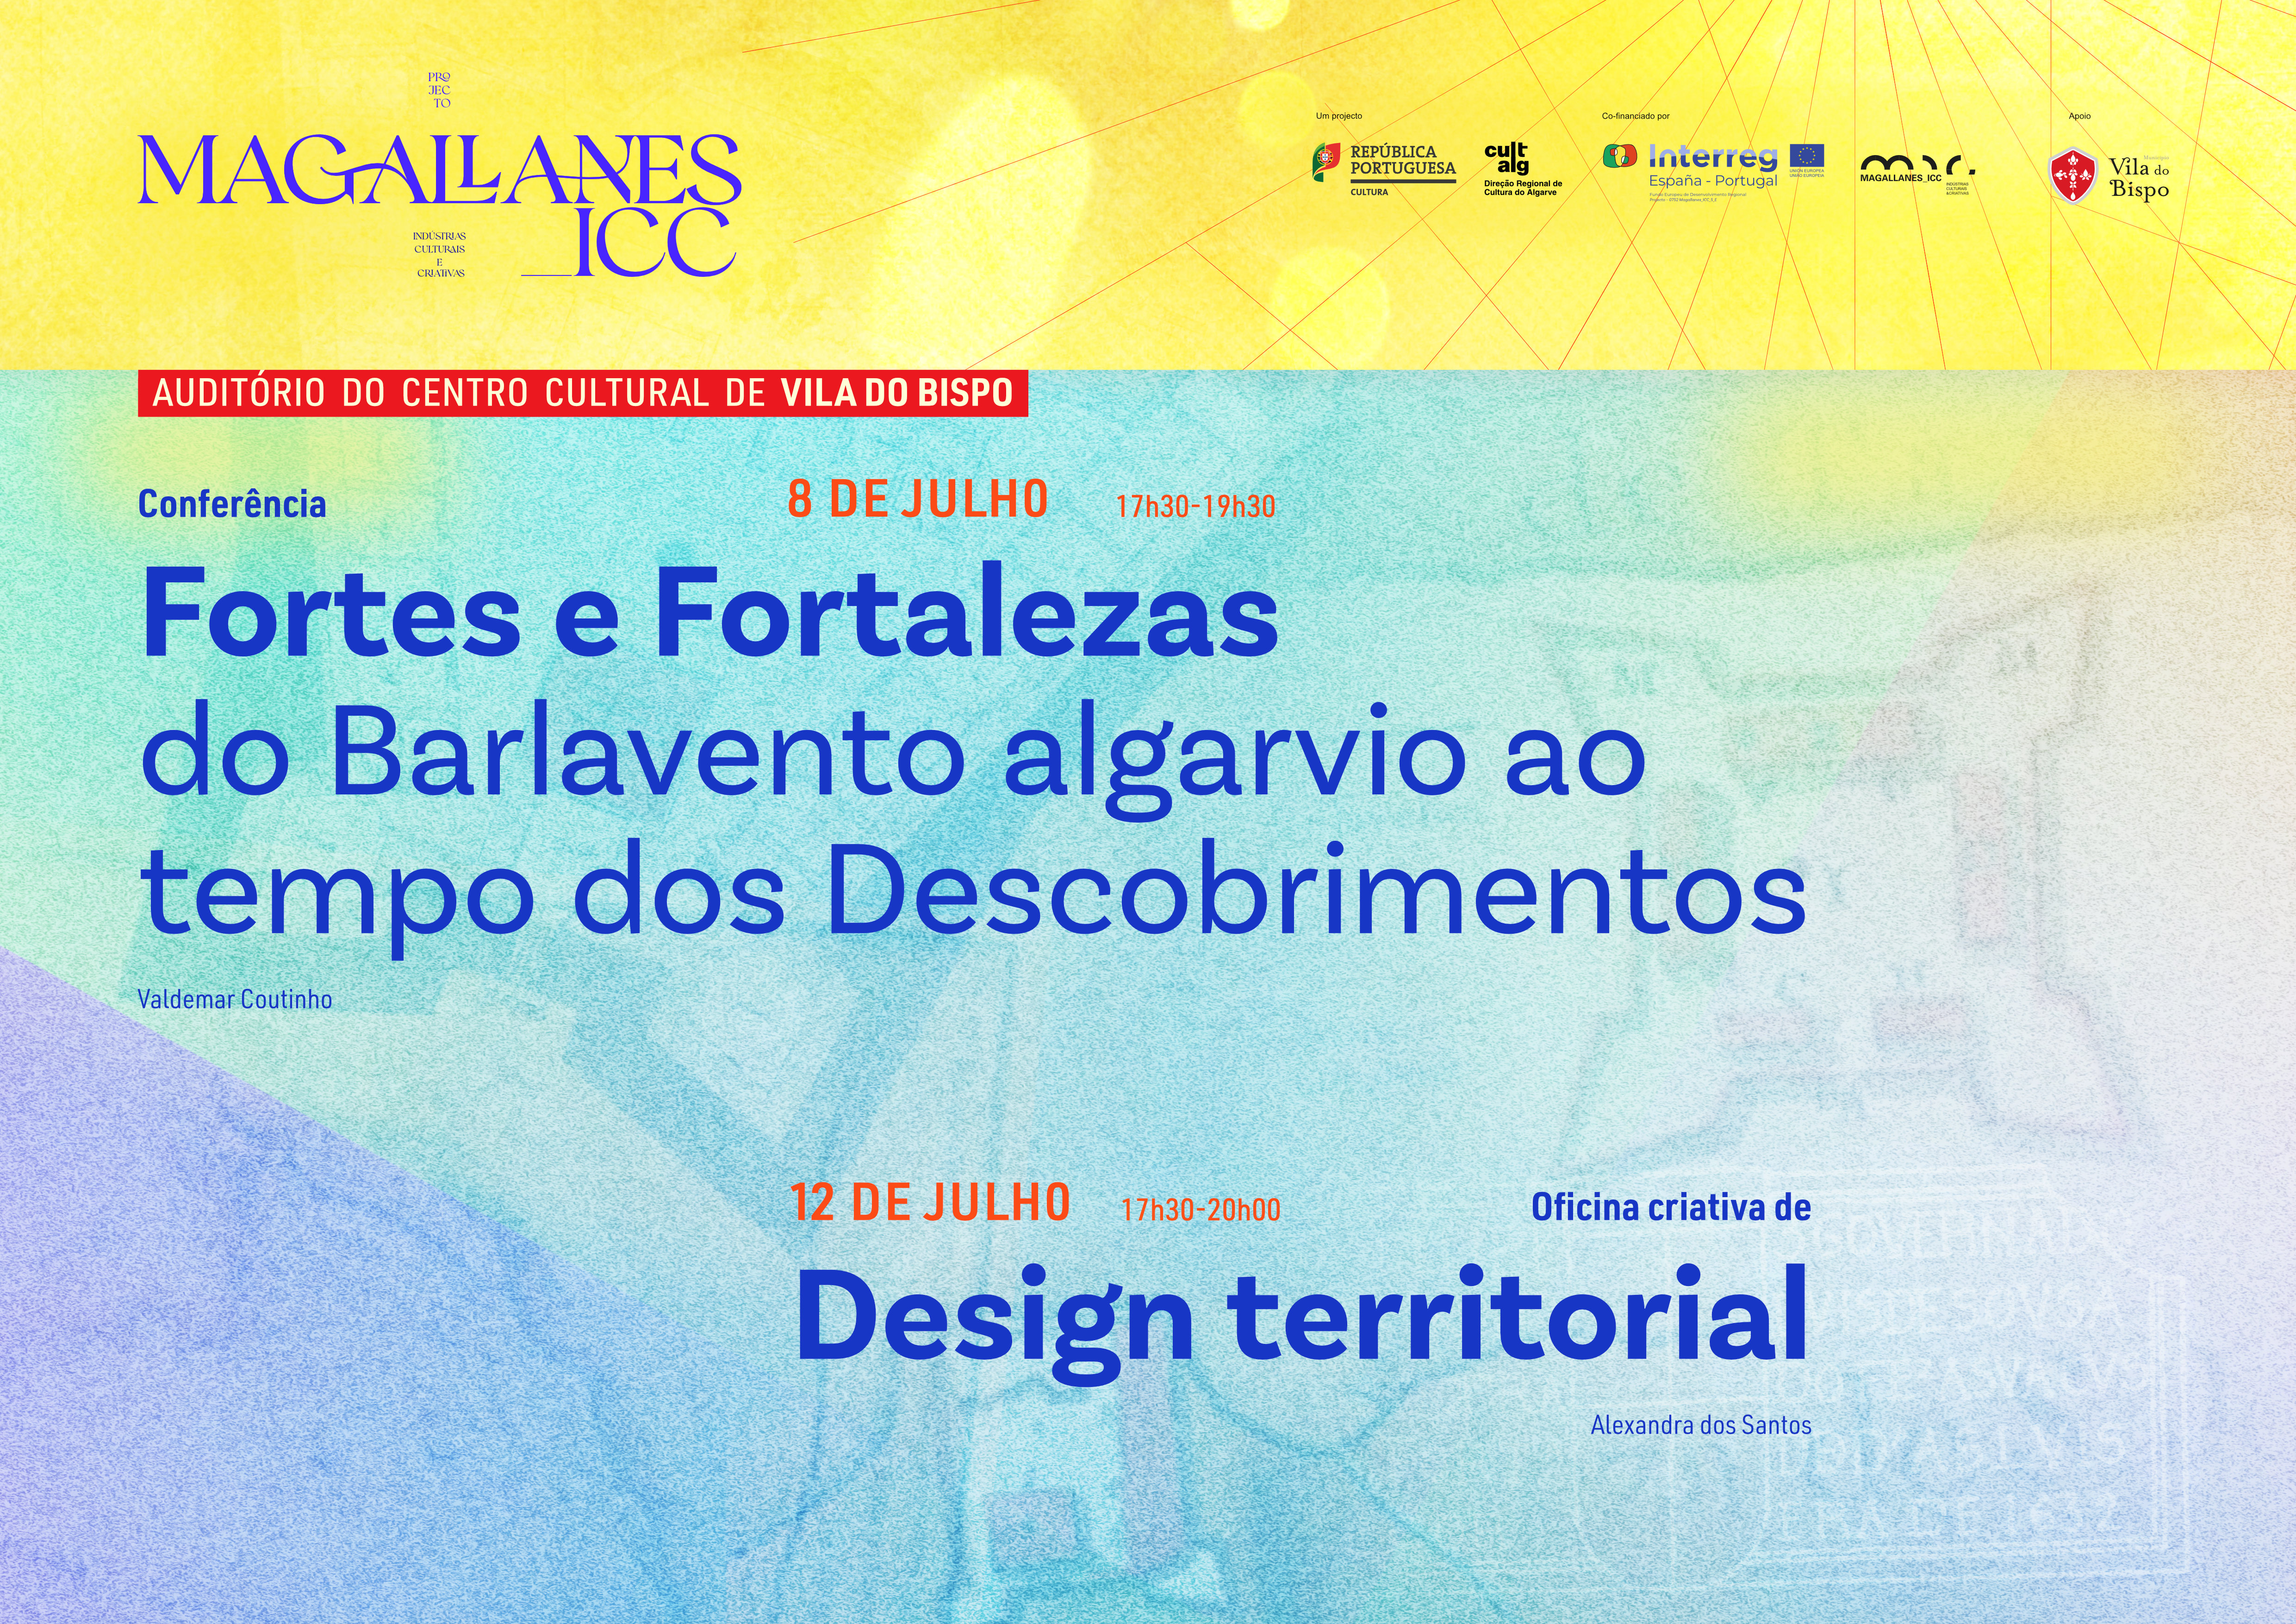 Conferência sobre Fortificações Algarvias na Época dos Descobrimentos e Oficina Criativa de Design Territorial são as próximas atividades da DRCAlg no âmbito do Magallanes_ICC